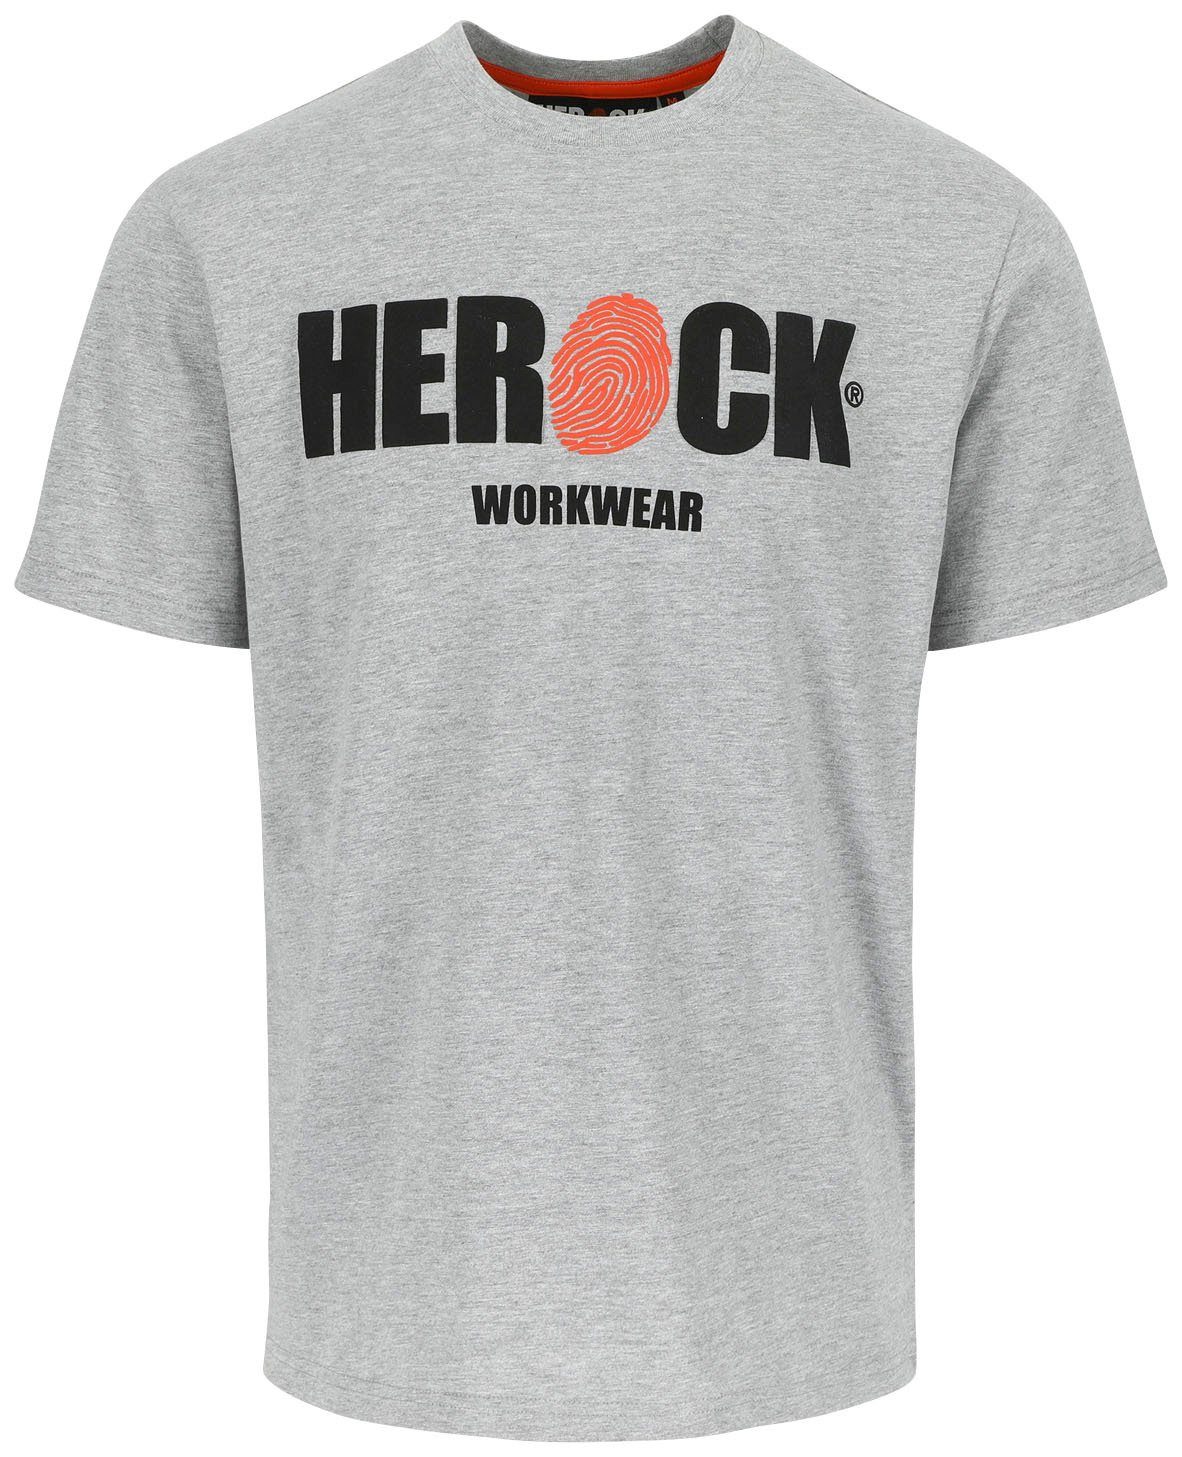 Herock T-Shirt ENI Baumwolle, Rundhals, Herock®-Aufdruck, Tragegefühl angenehmes mit